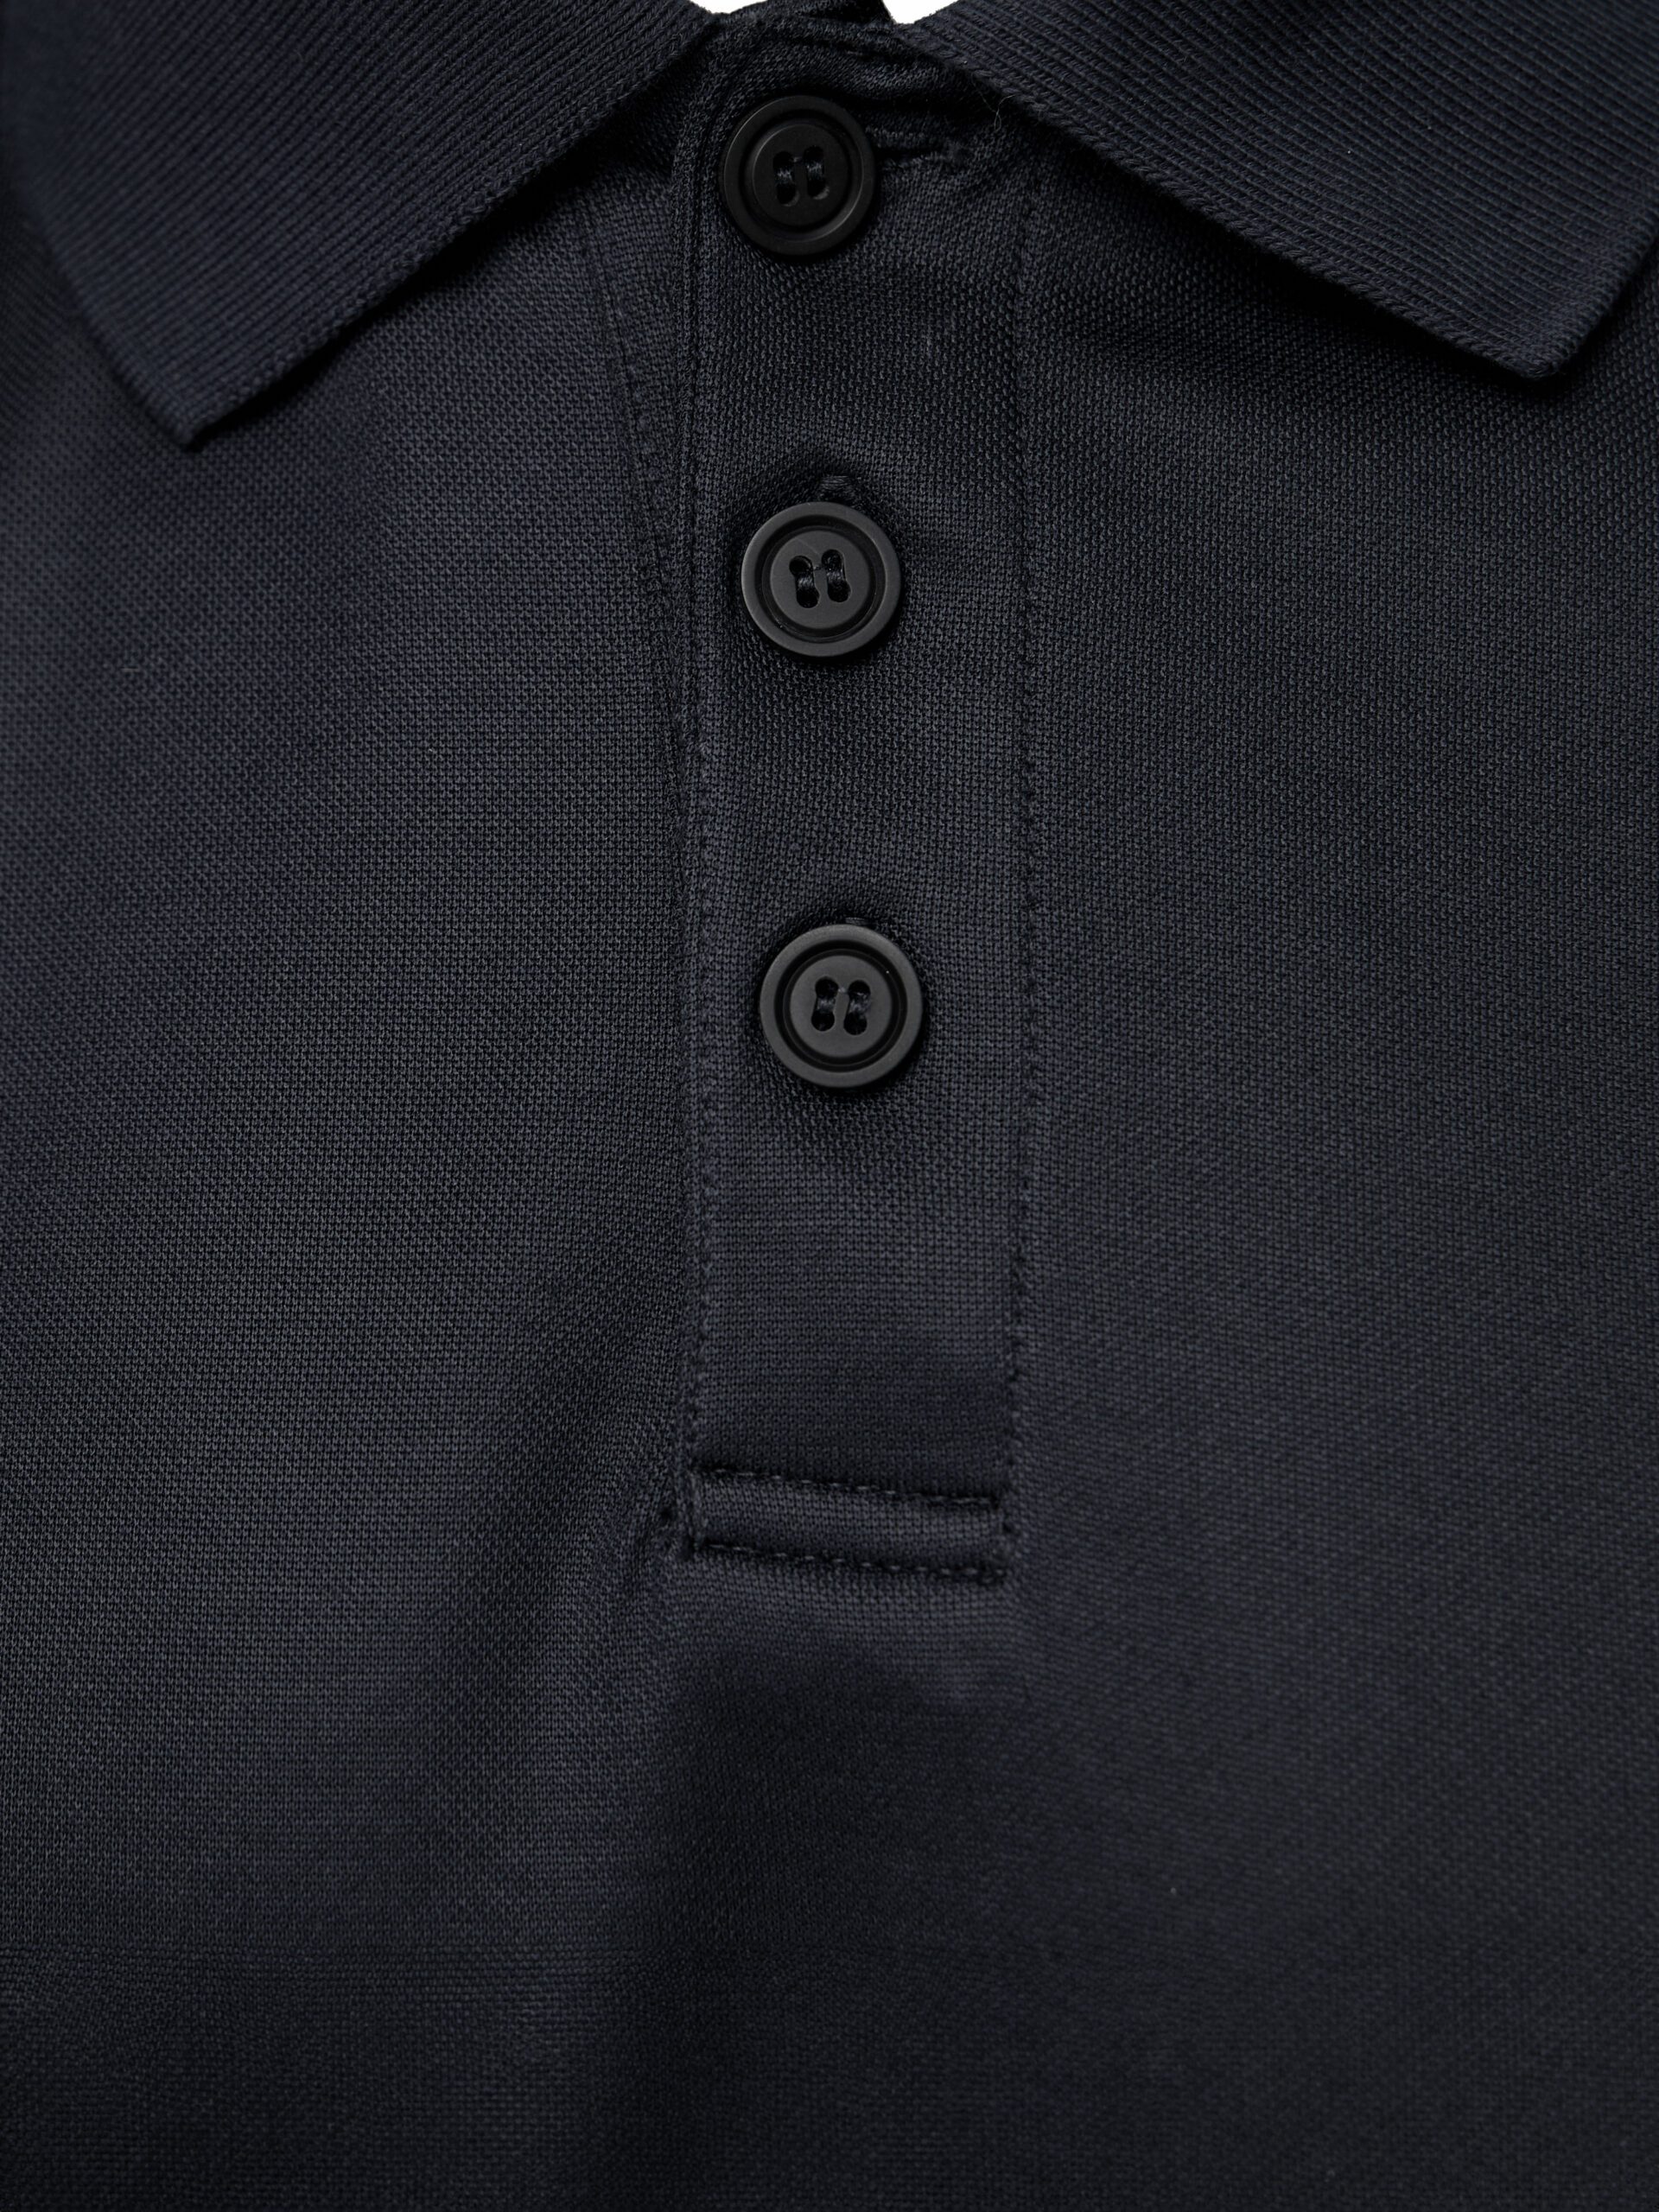 PUMA Workwear Essentials Men's Polo Shirt | PUMA Workwear